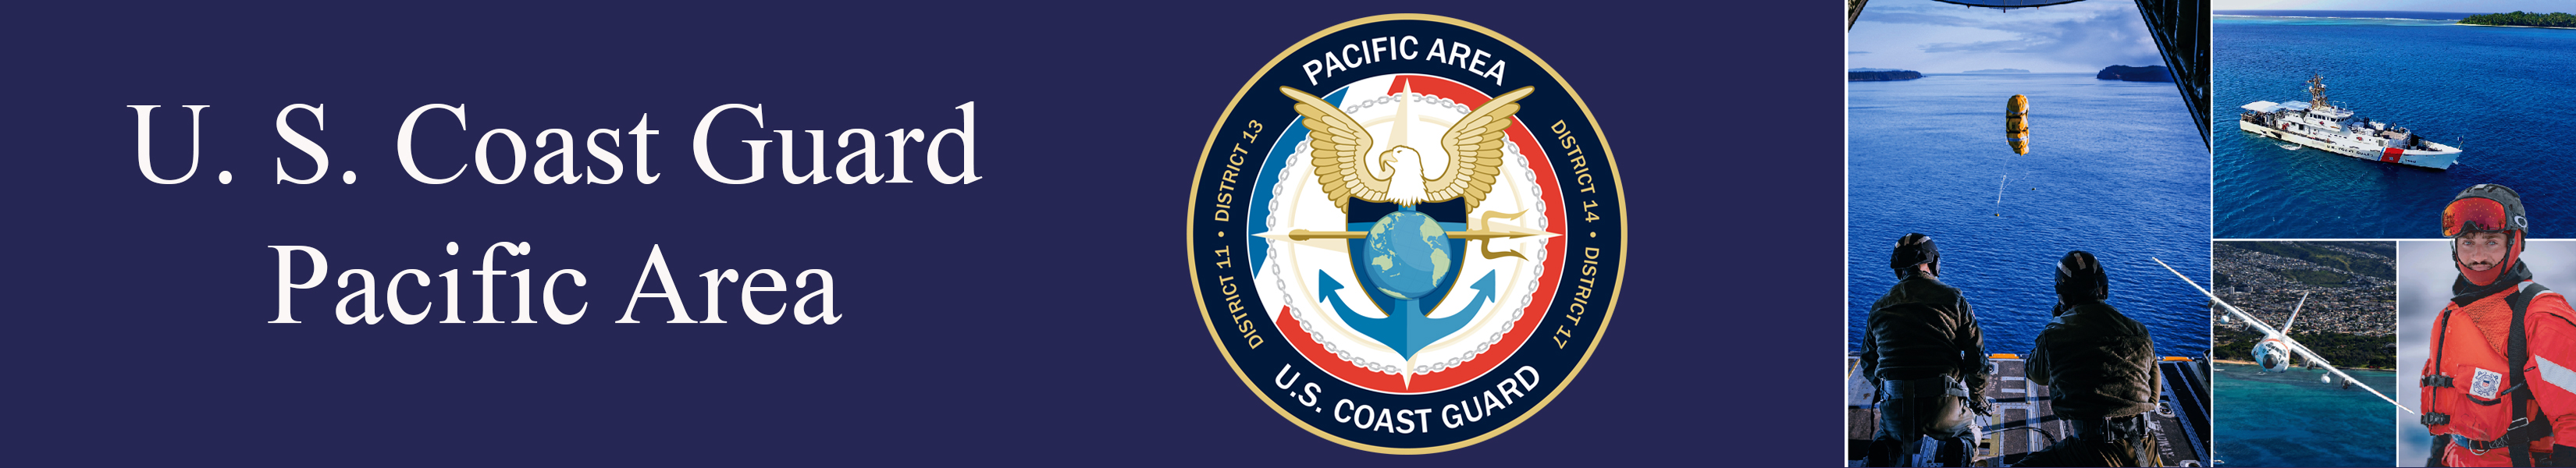 U.S. Coast Guard Pacific Area Banner